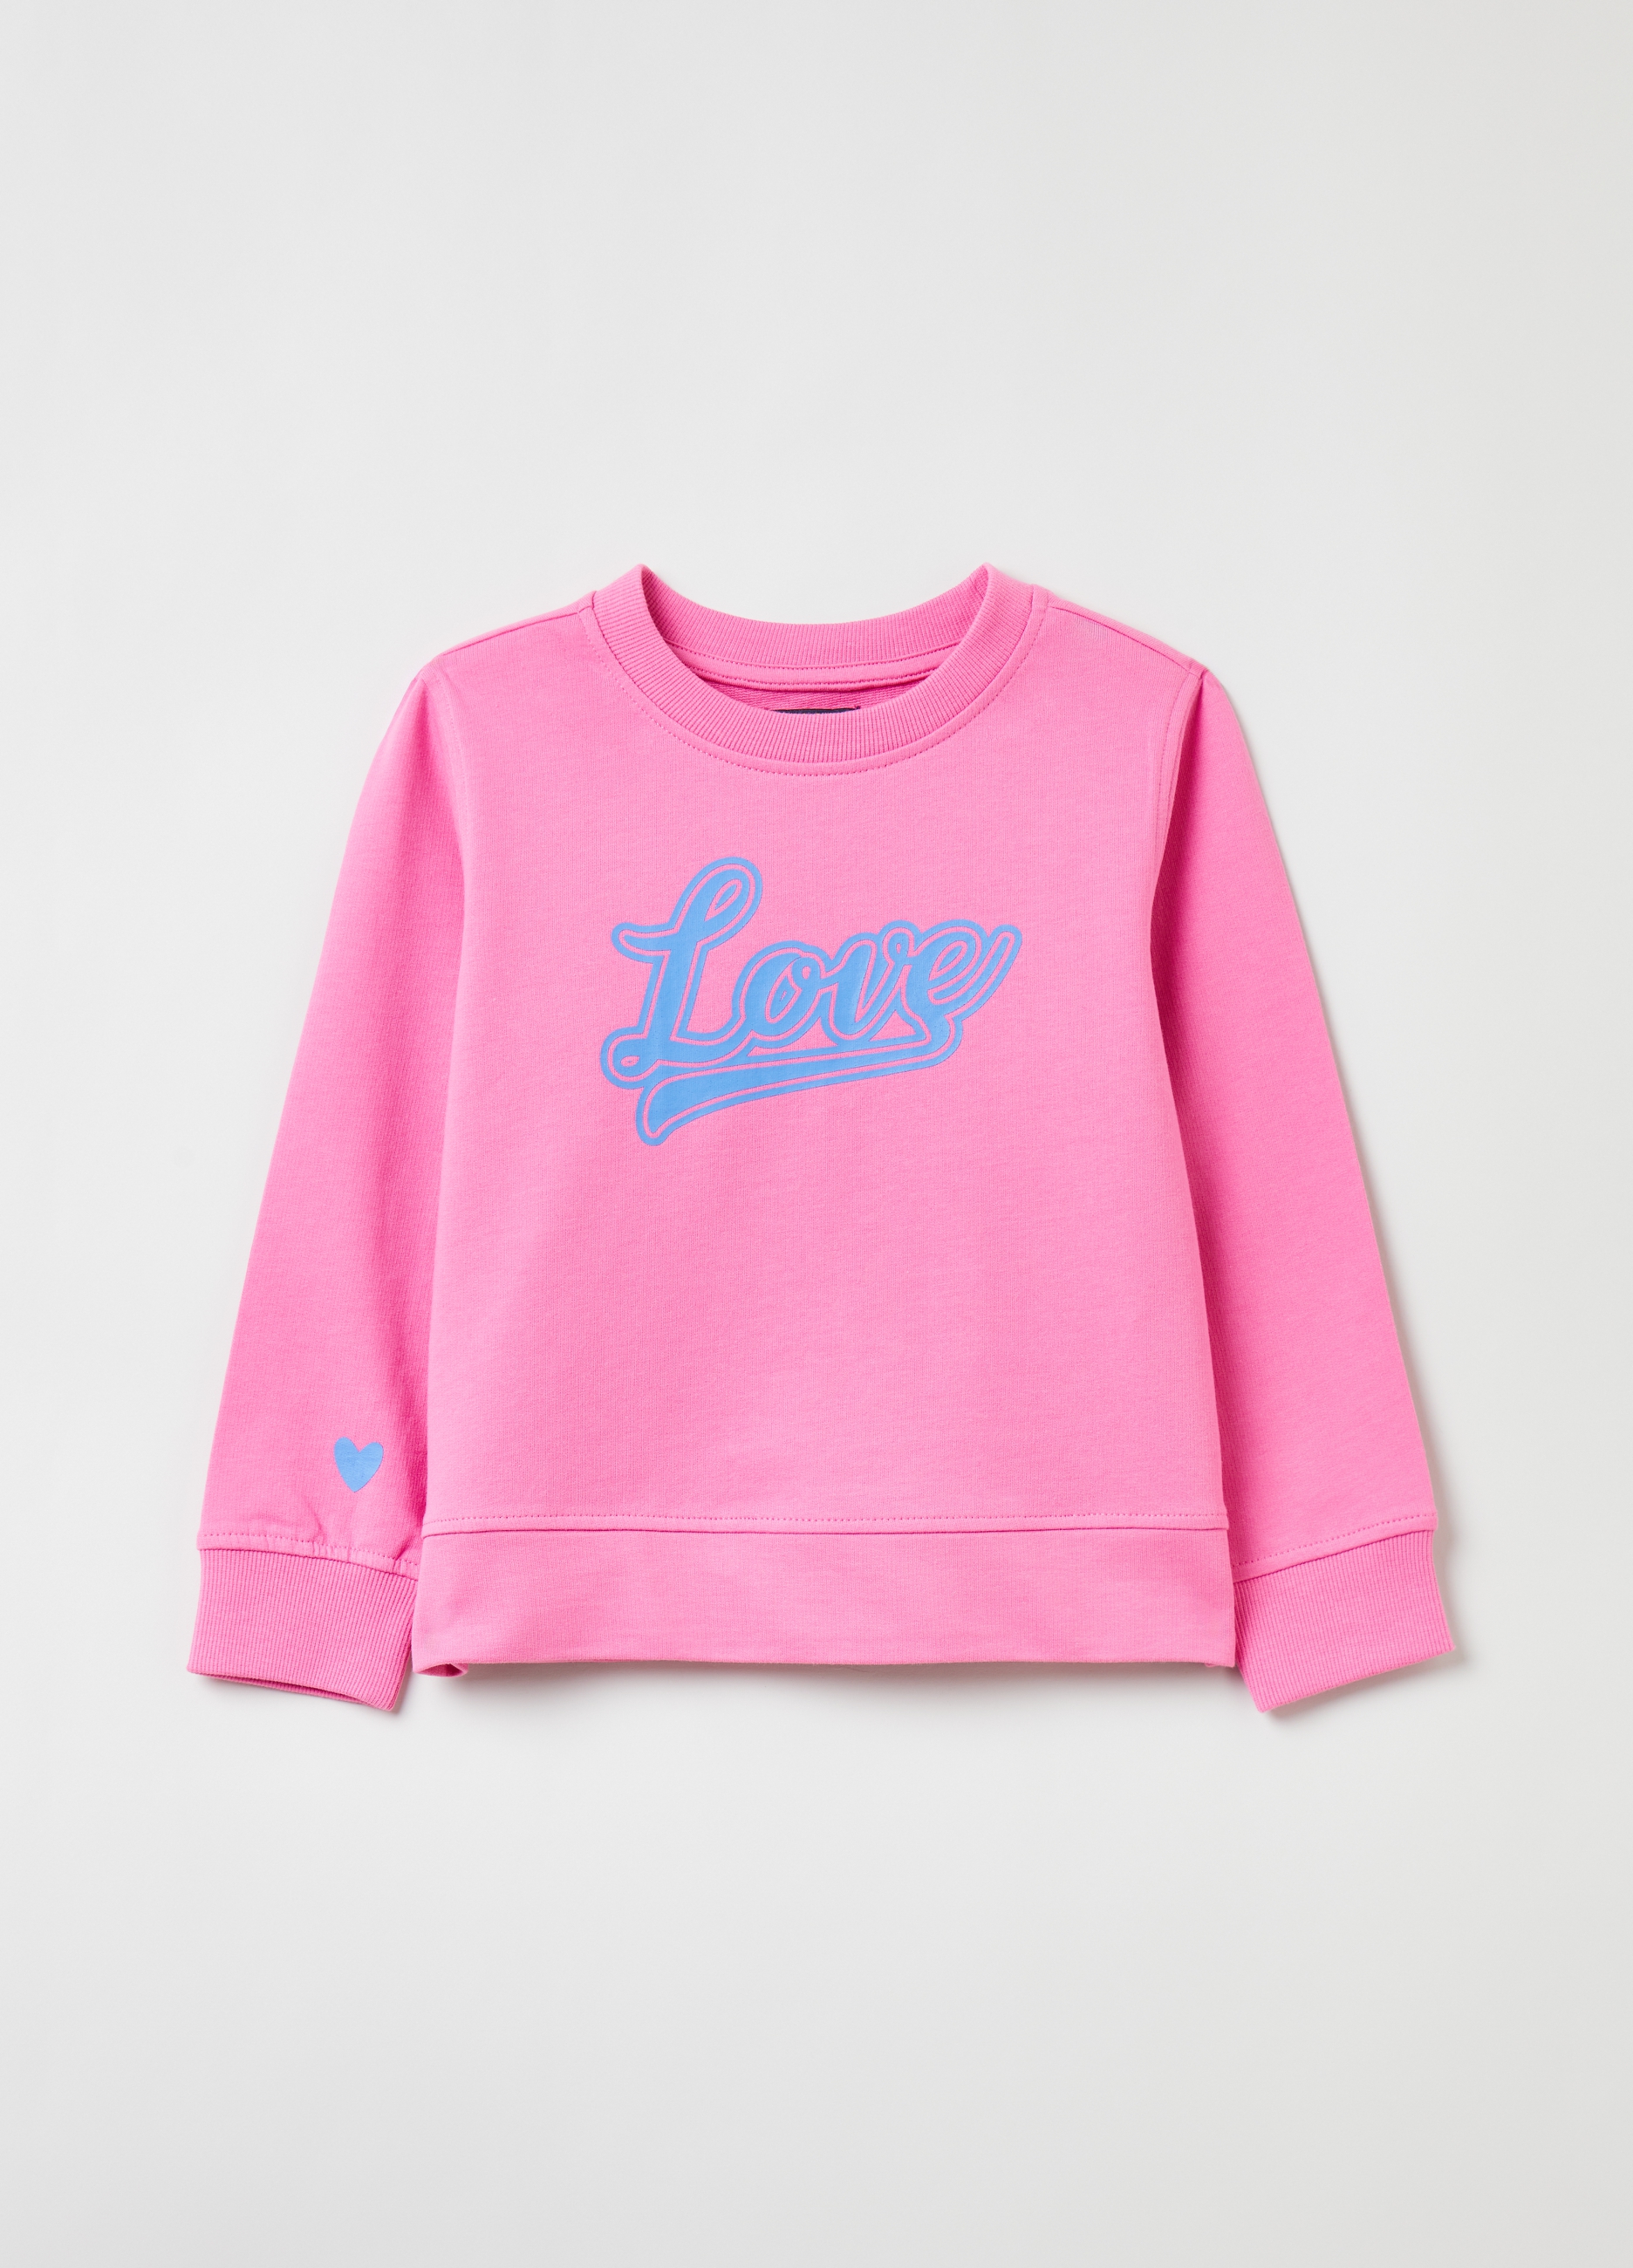 Фуфайка OVS для девочек, розовая, 3-4 лет, 1843535 комплект для девочек фуфайка трикотажная футболка шорты текстильные